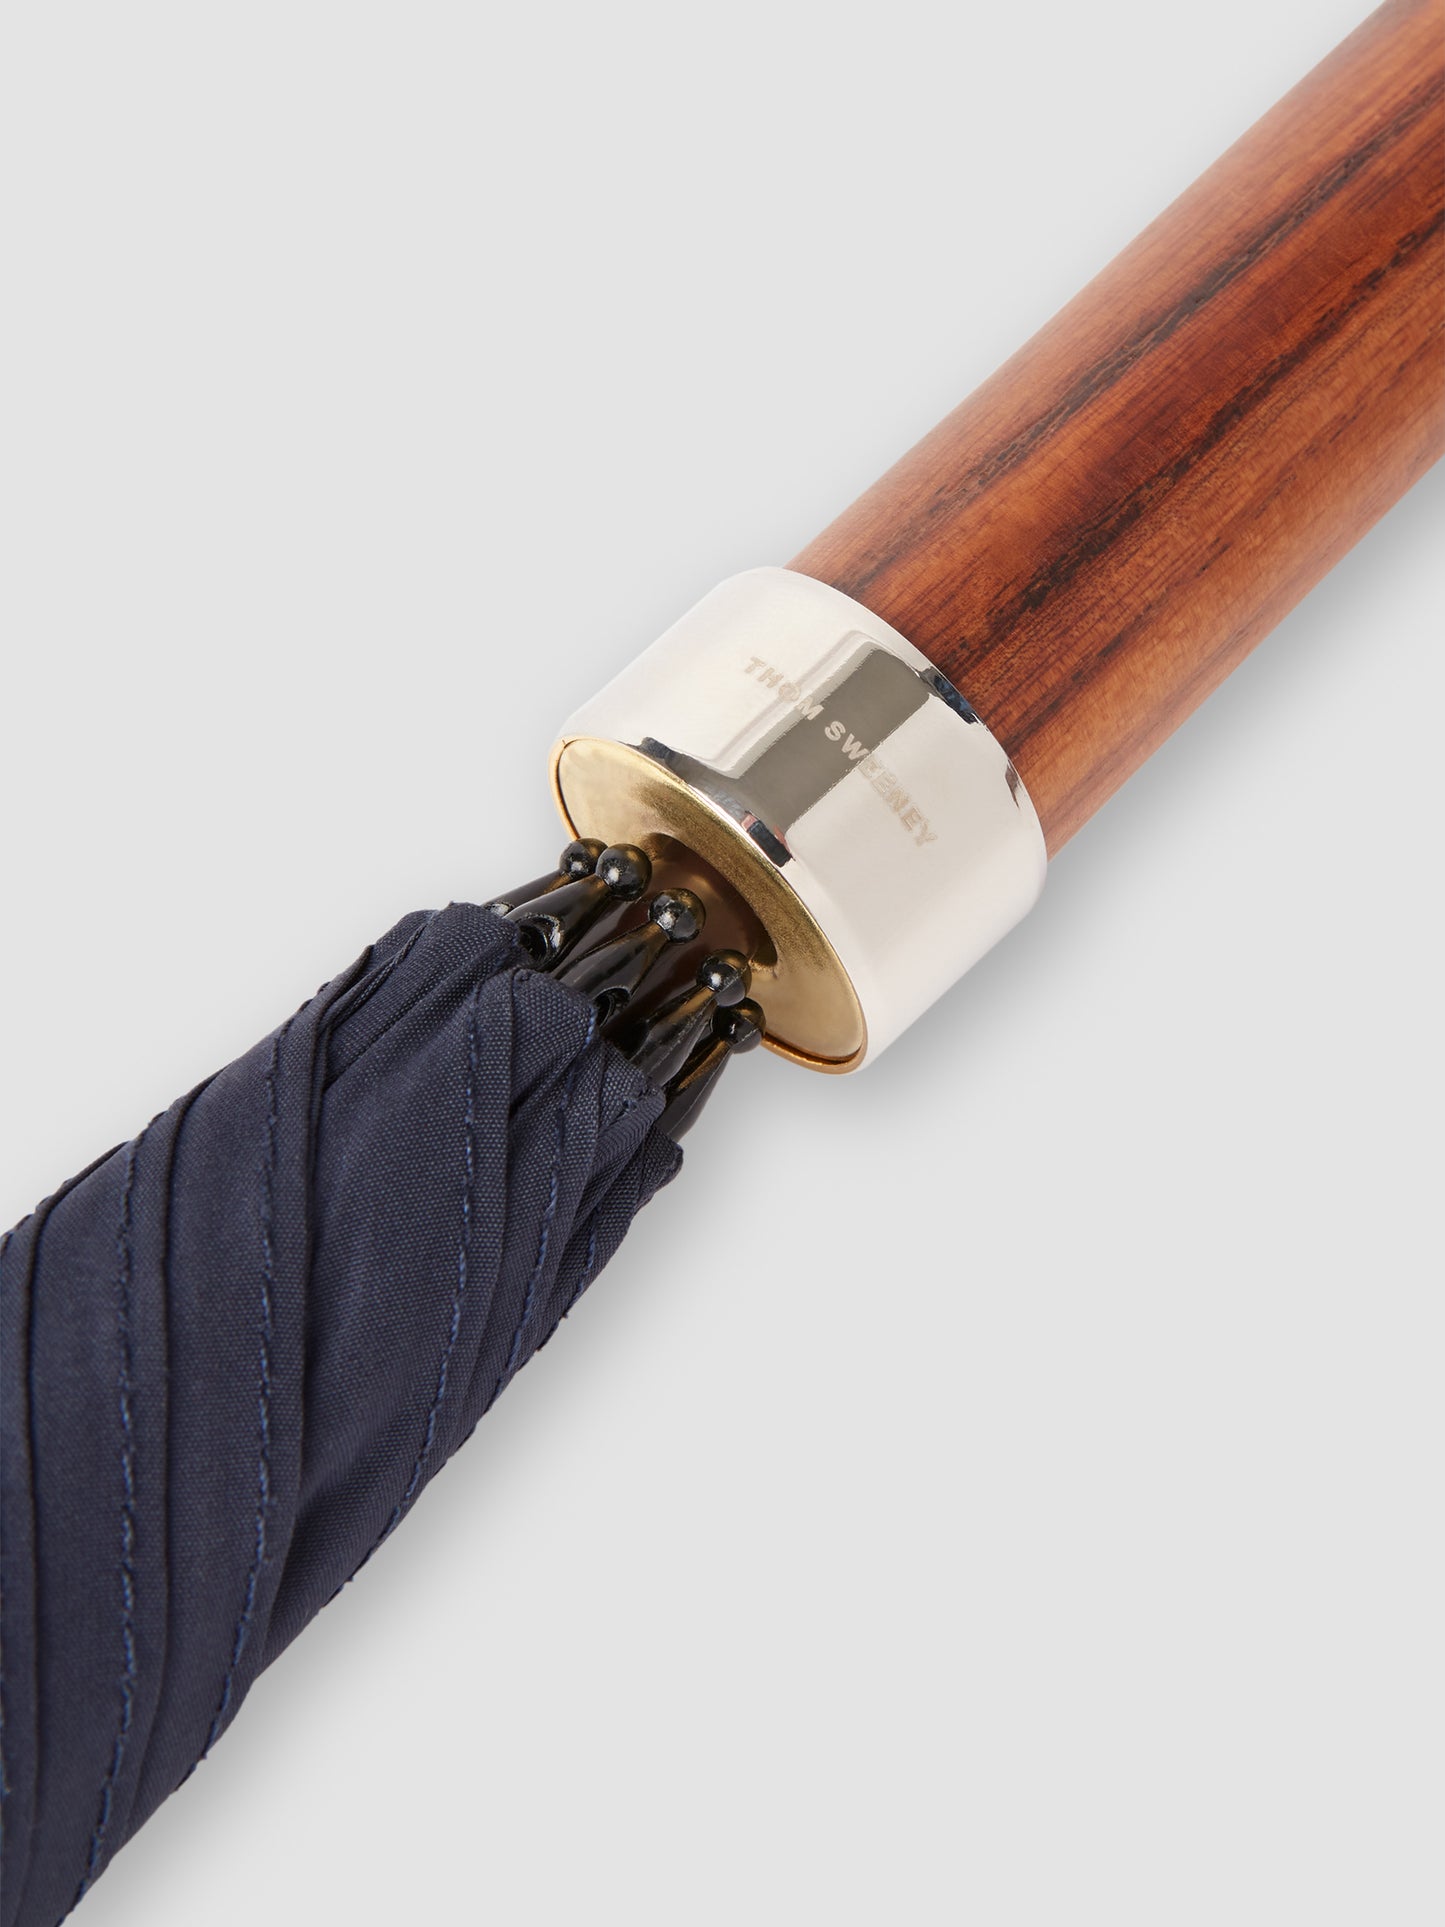 Nylon and Mahogany Wood Umbrella Navy Product Image